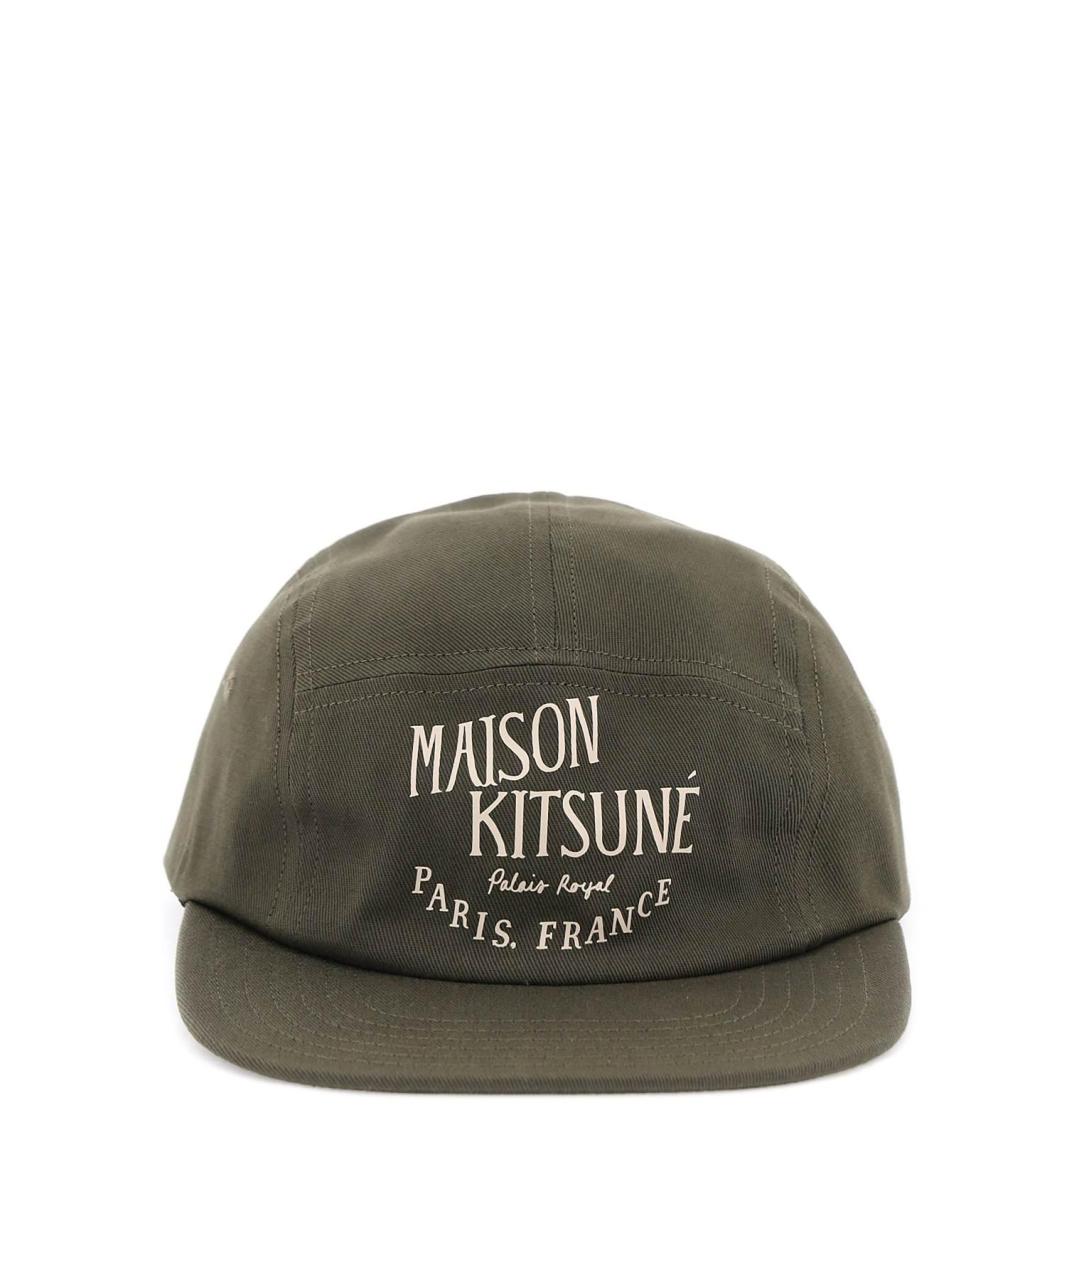 MAISON KITSUNE Хаки хлопковая кепка/бейсболка, фото 1